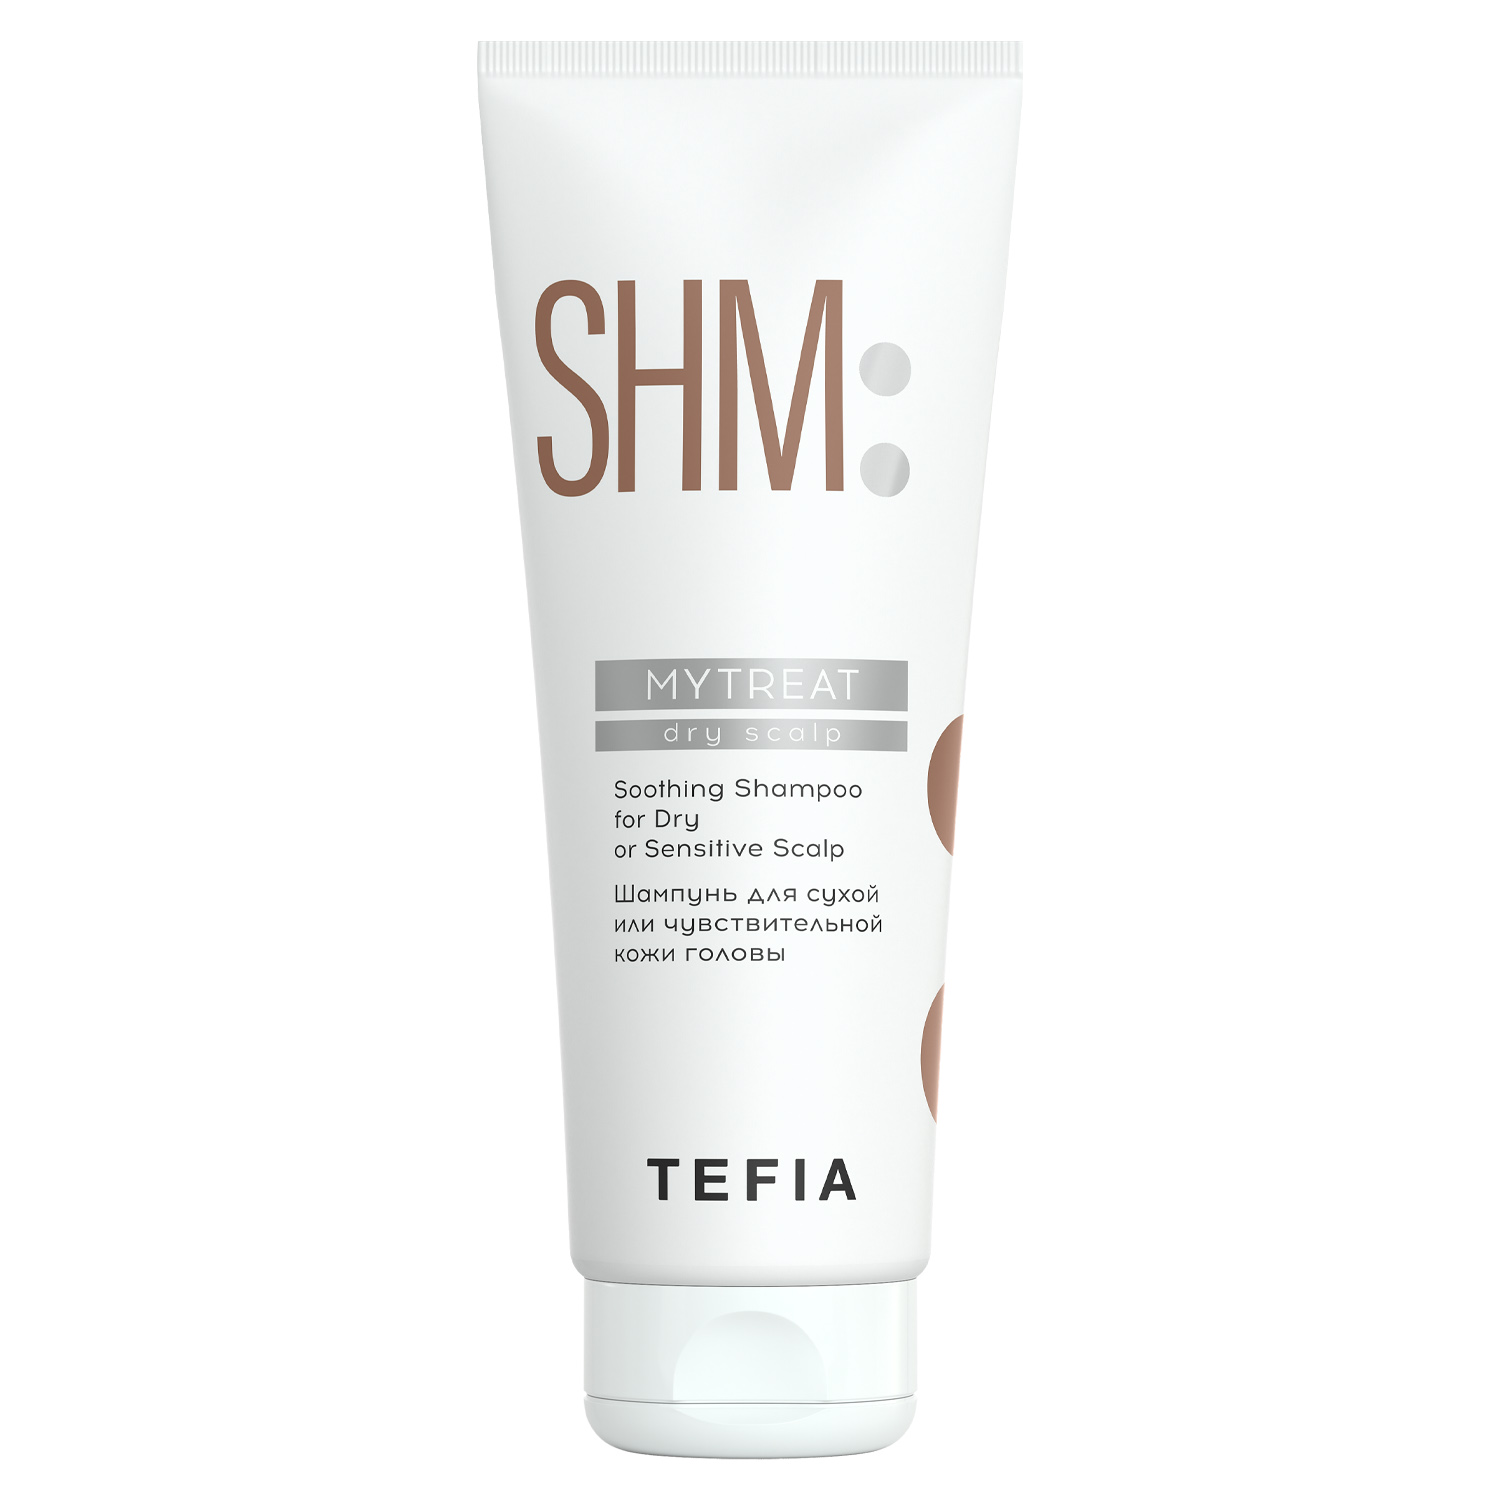 Tefia Шампунь для сухой или чувствительной кожи головы, 250 мл (Tefia, MyTreat) tefia шампунь shm mytreat purifying для нормальной кожи головы 250 мл